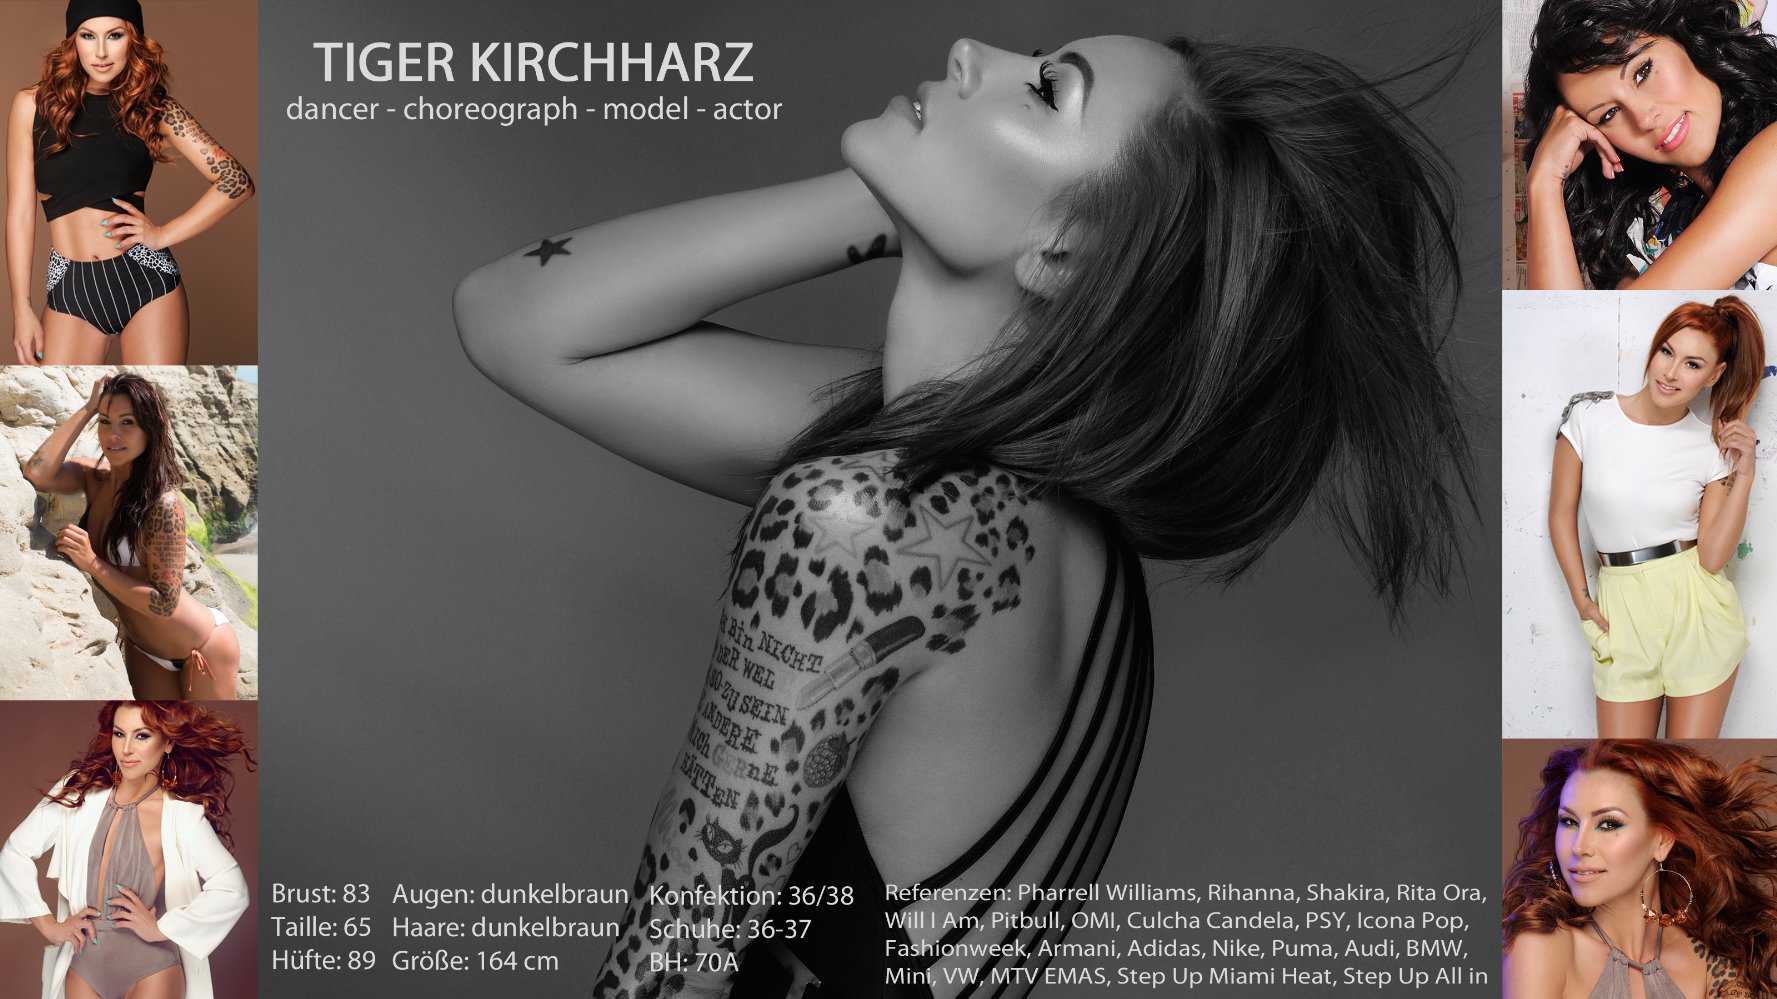 Tiger Kirchharz